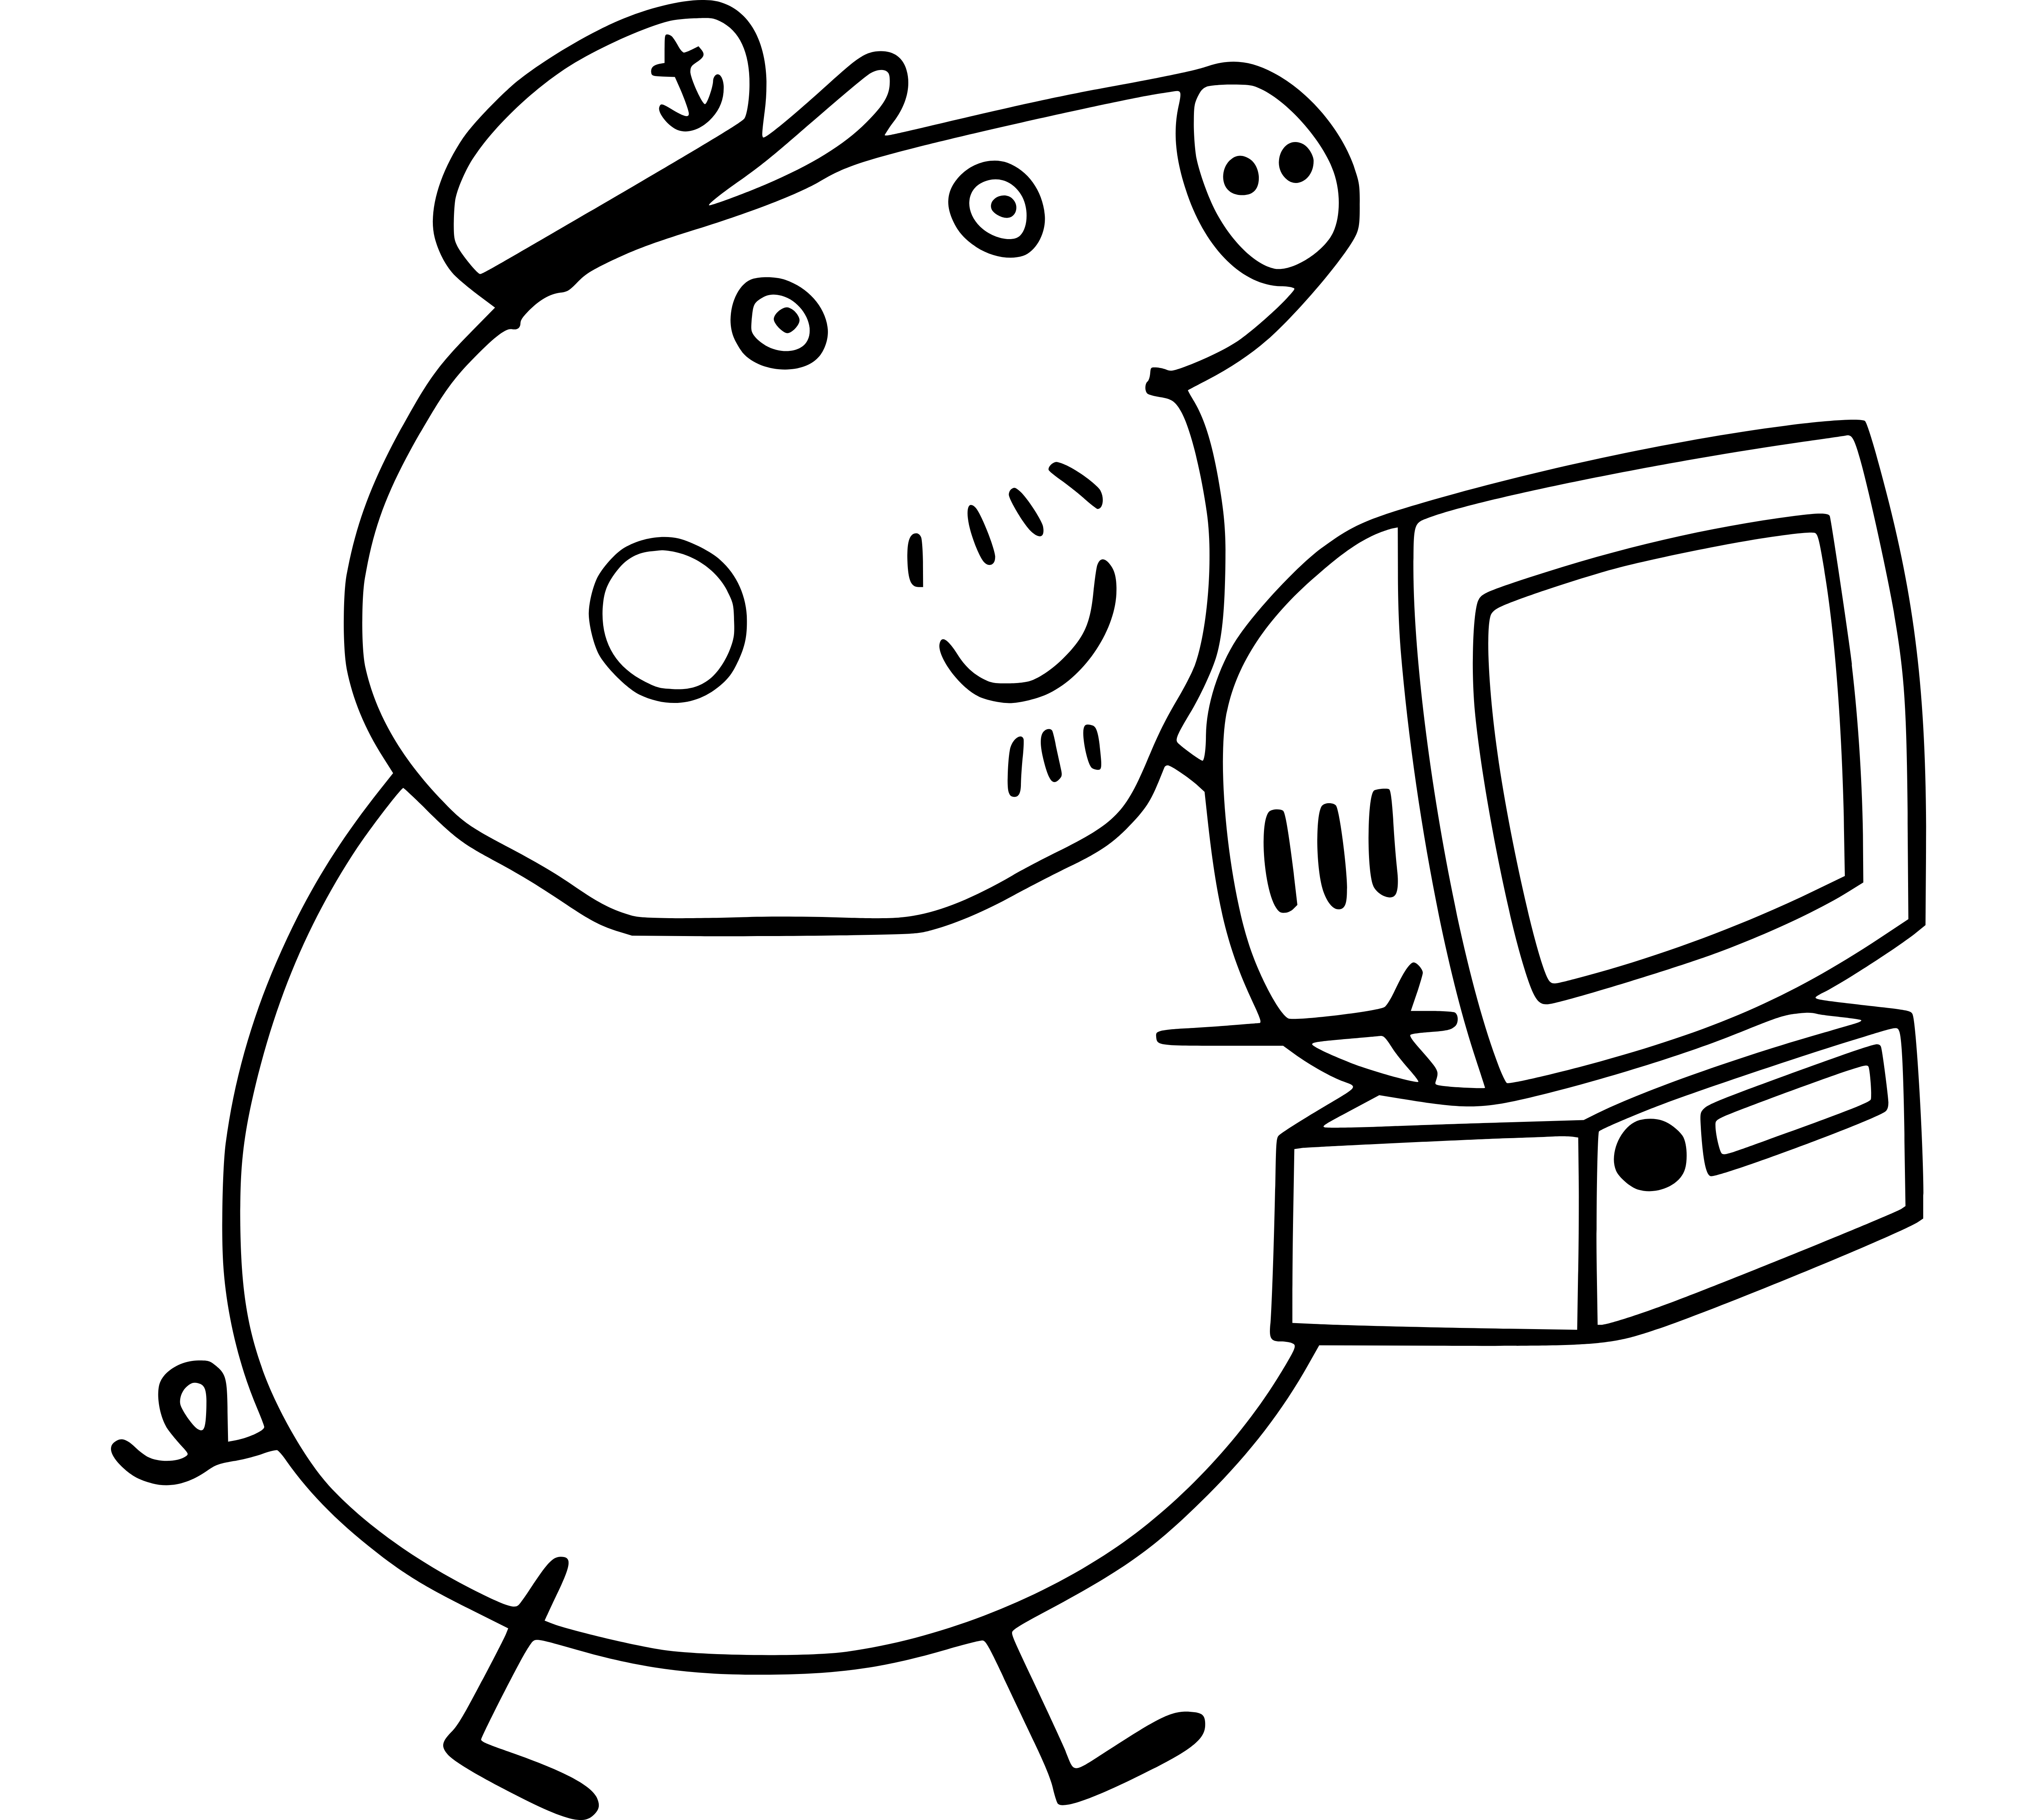 Peppa's Grandpa Pig Holds a Computer - SheetalColor.com